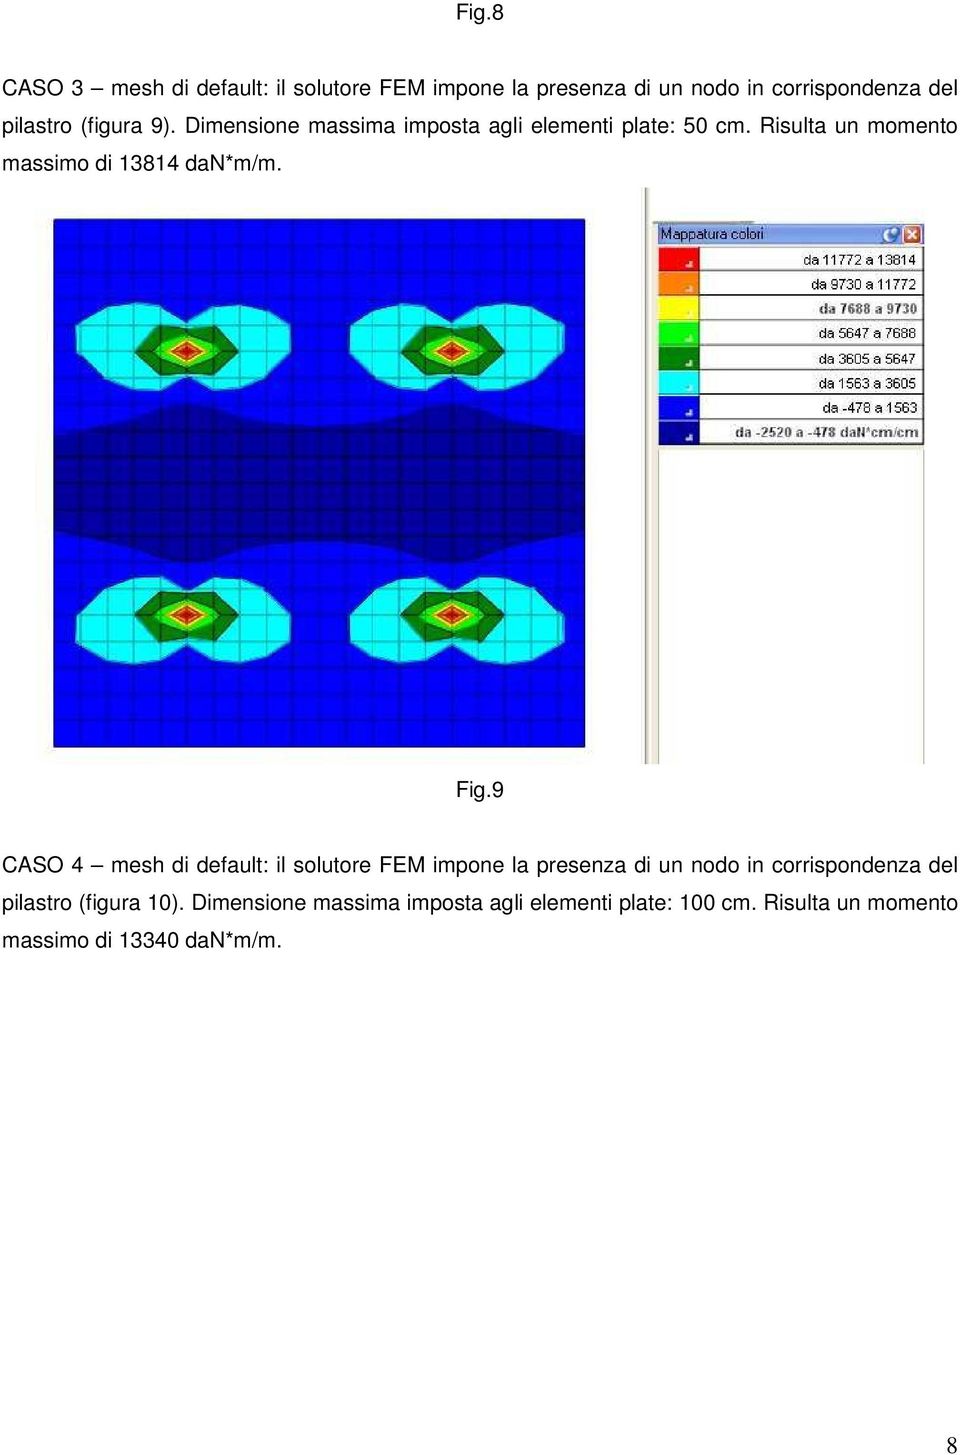 Fig.9 CASO 4 mesh di default: il solutore FEM impone la presenza di un nodo in corrispondenza del pilastro